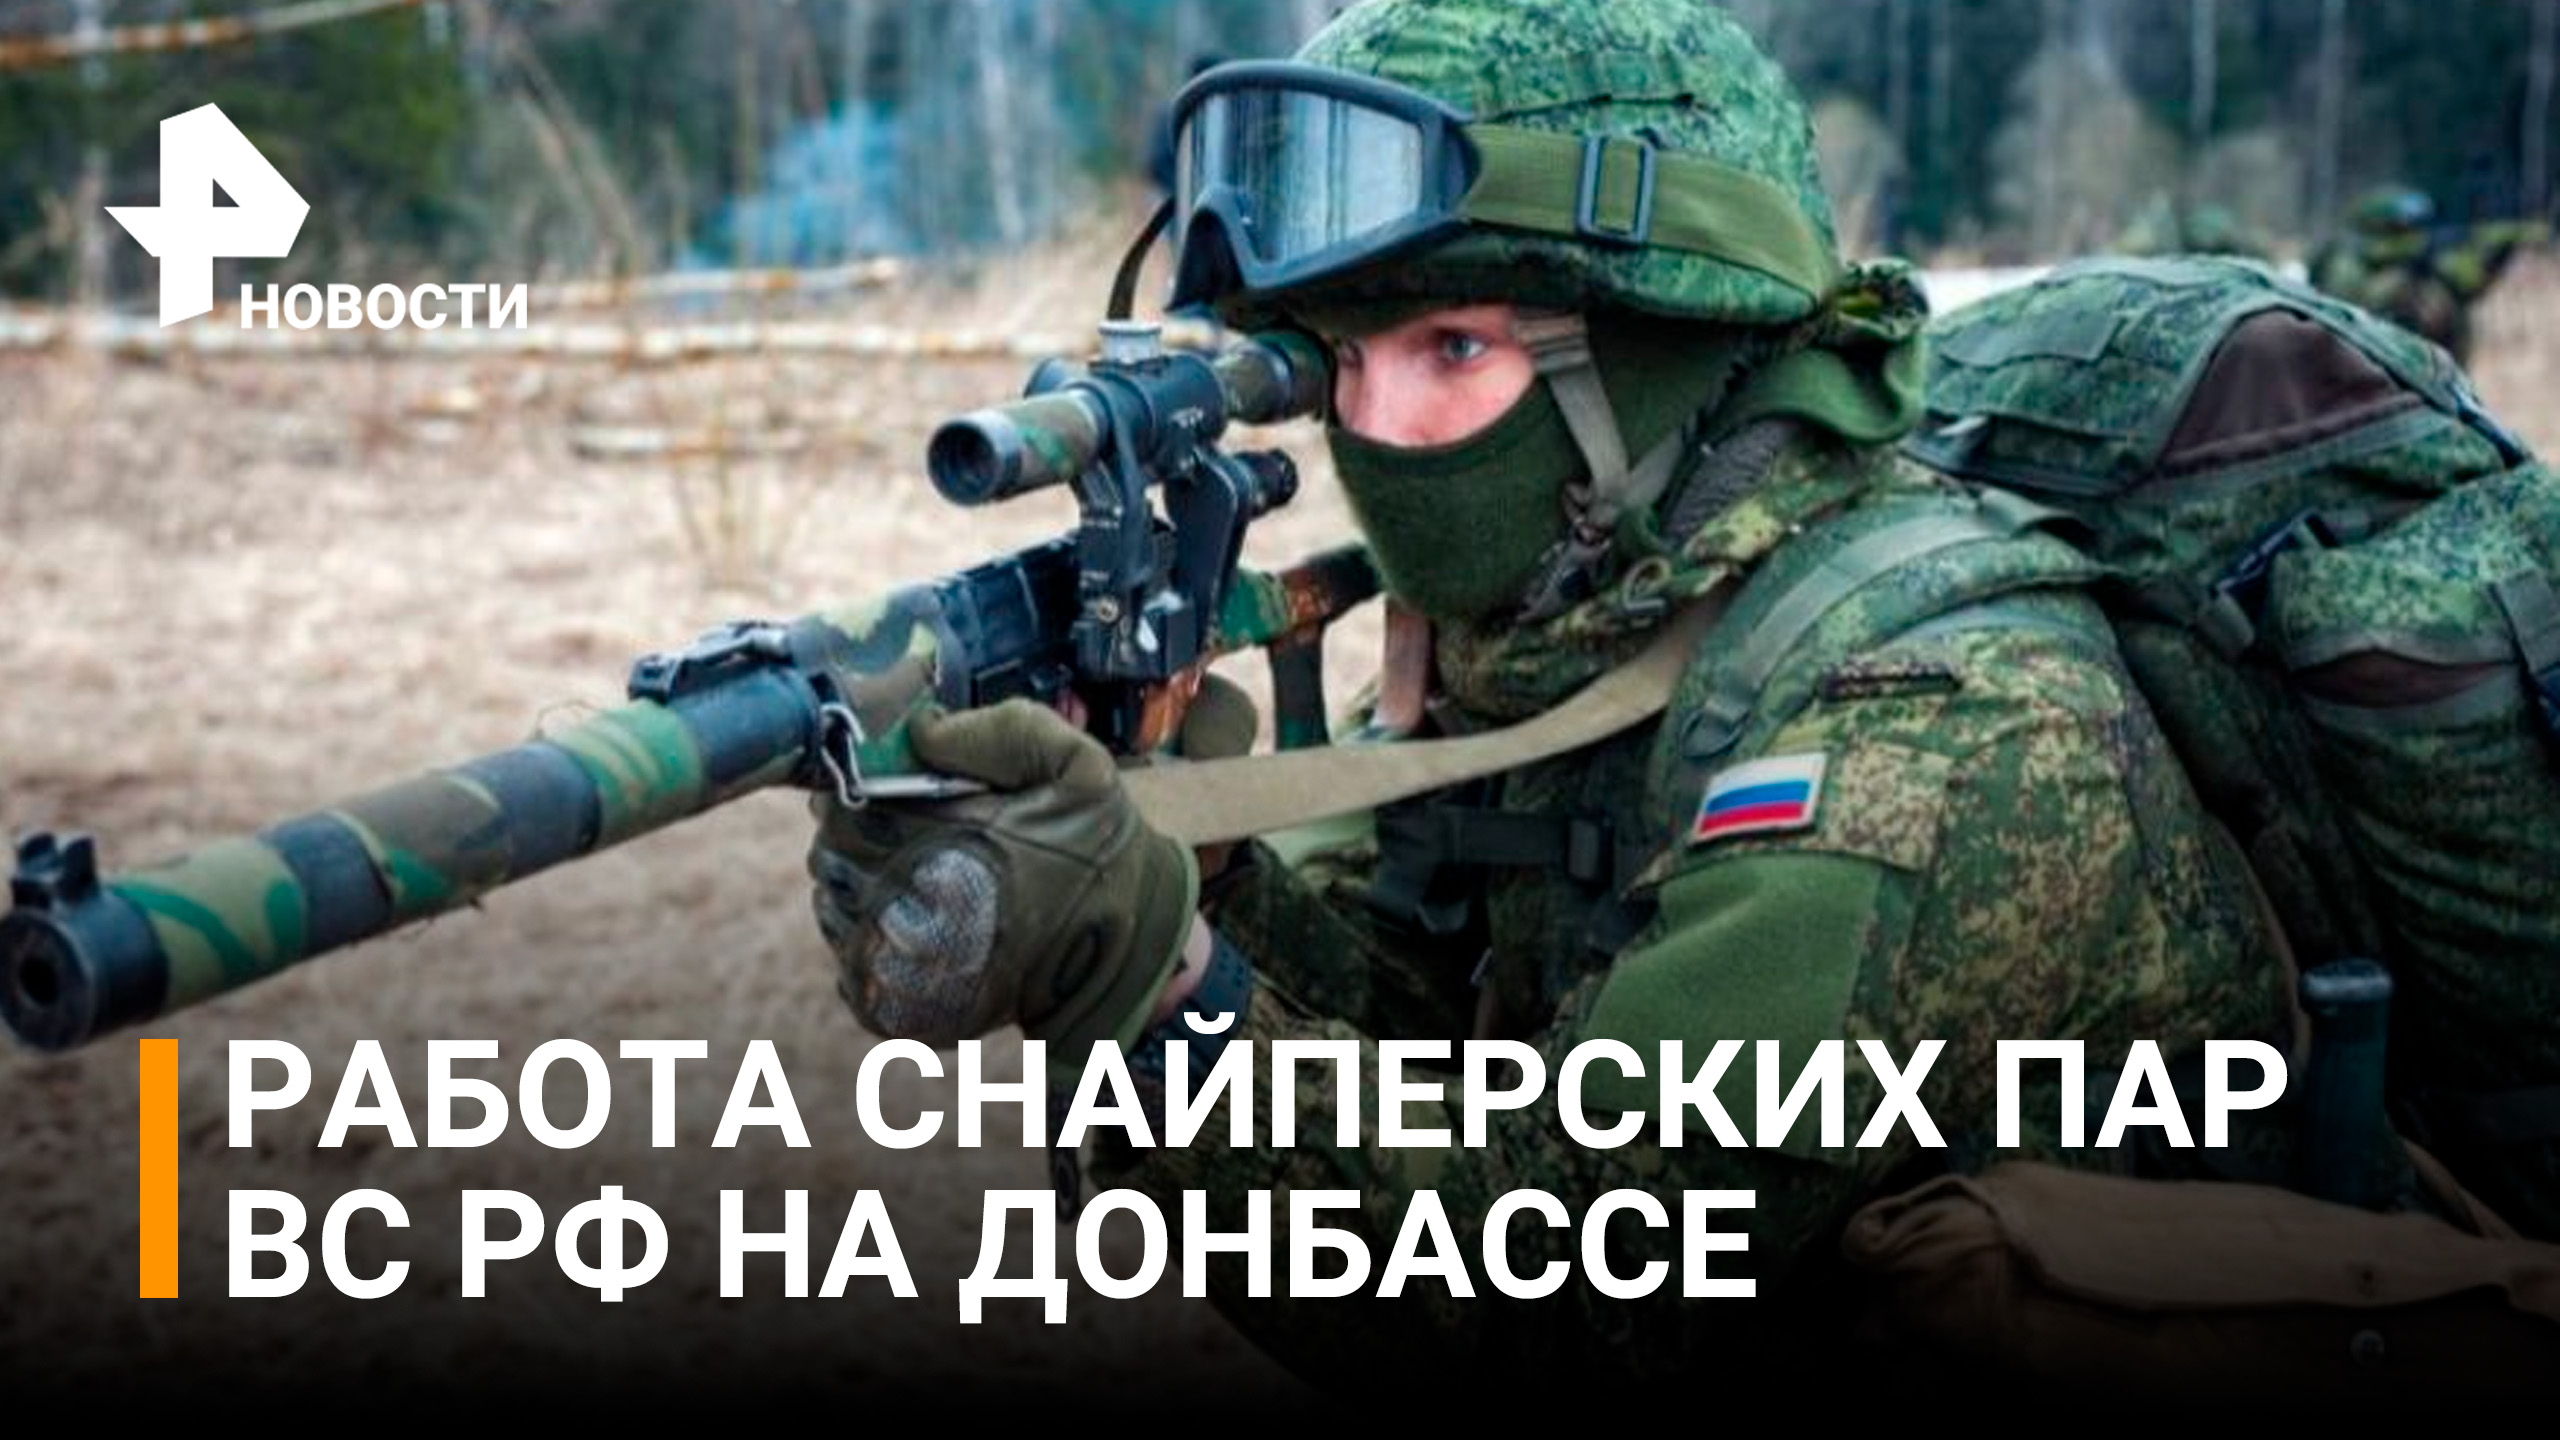 Минобороны показывает работу снайперских пар в ходе спецоперации по защите Донбасса / РЕН Новости